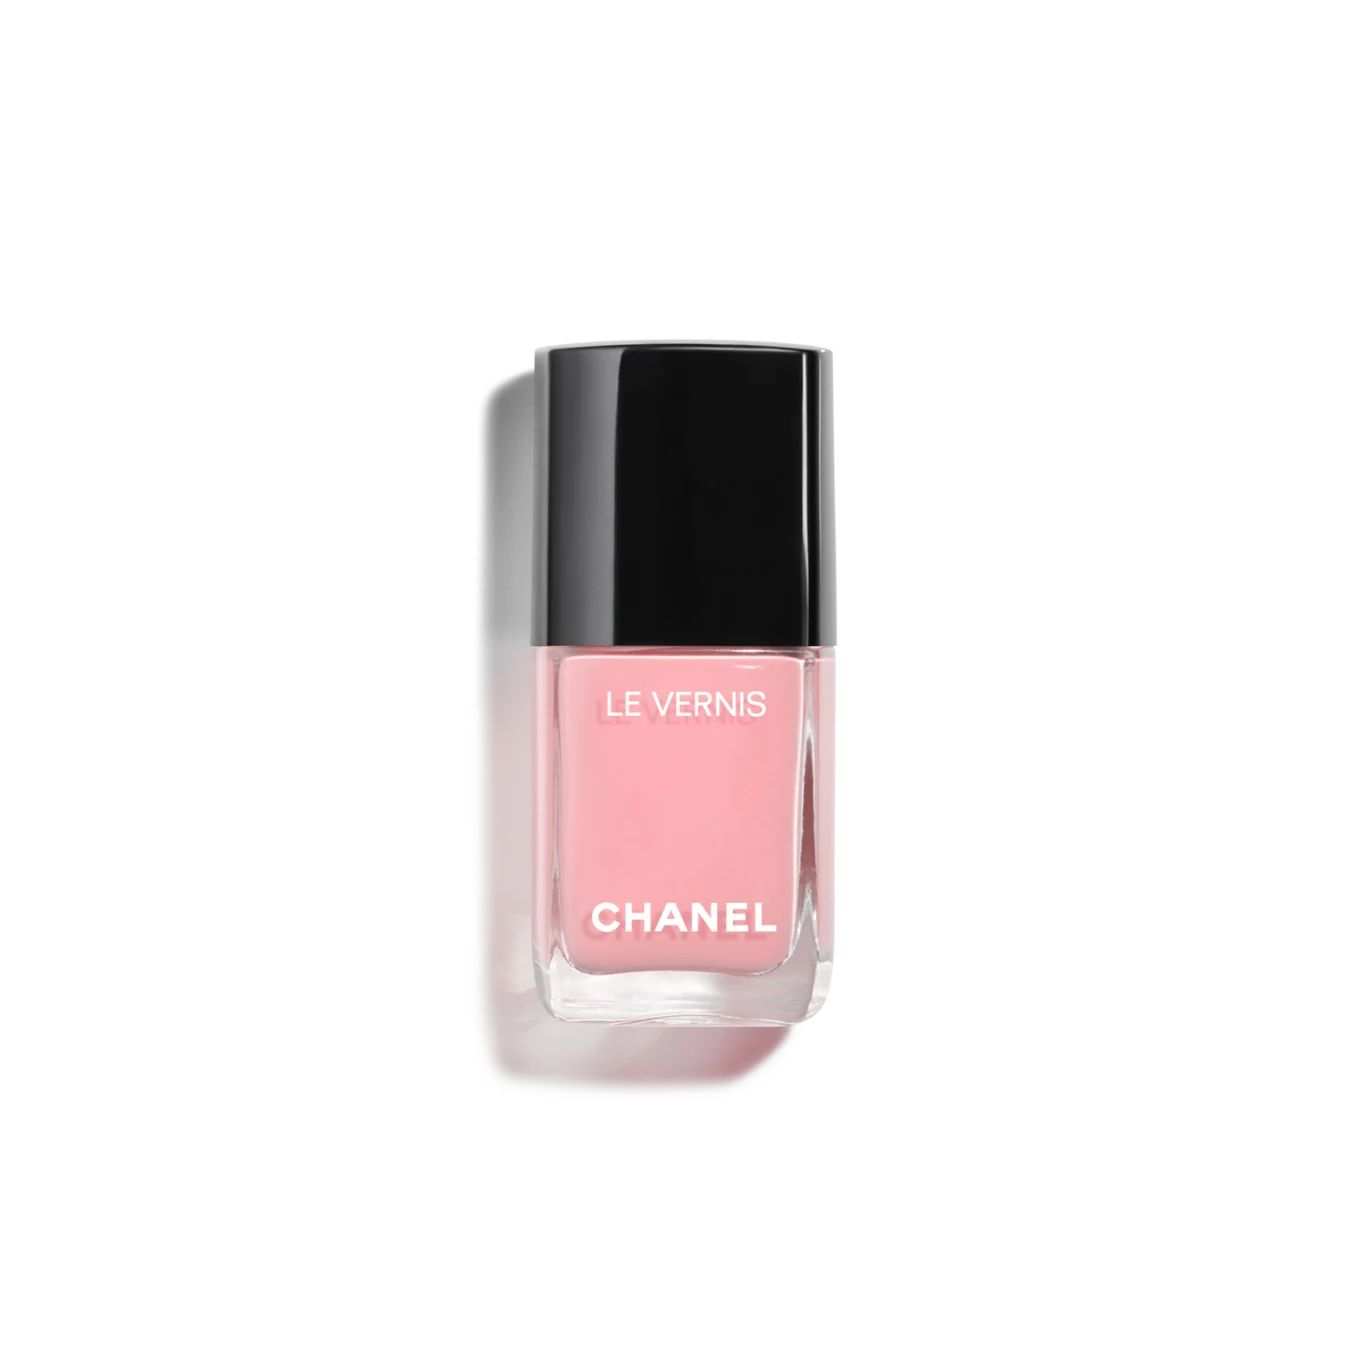 LE VERNIS | Chanel, Inc. (US)